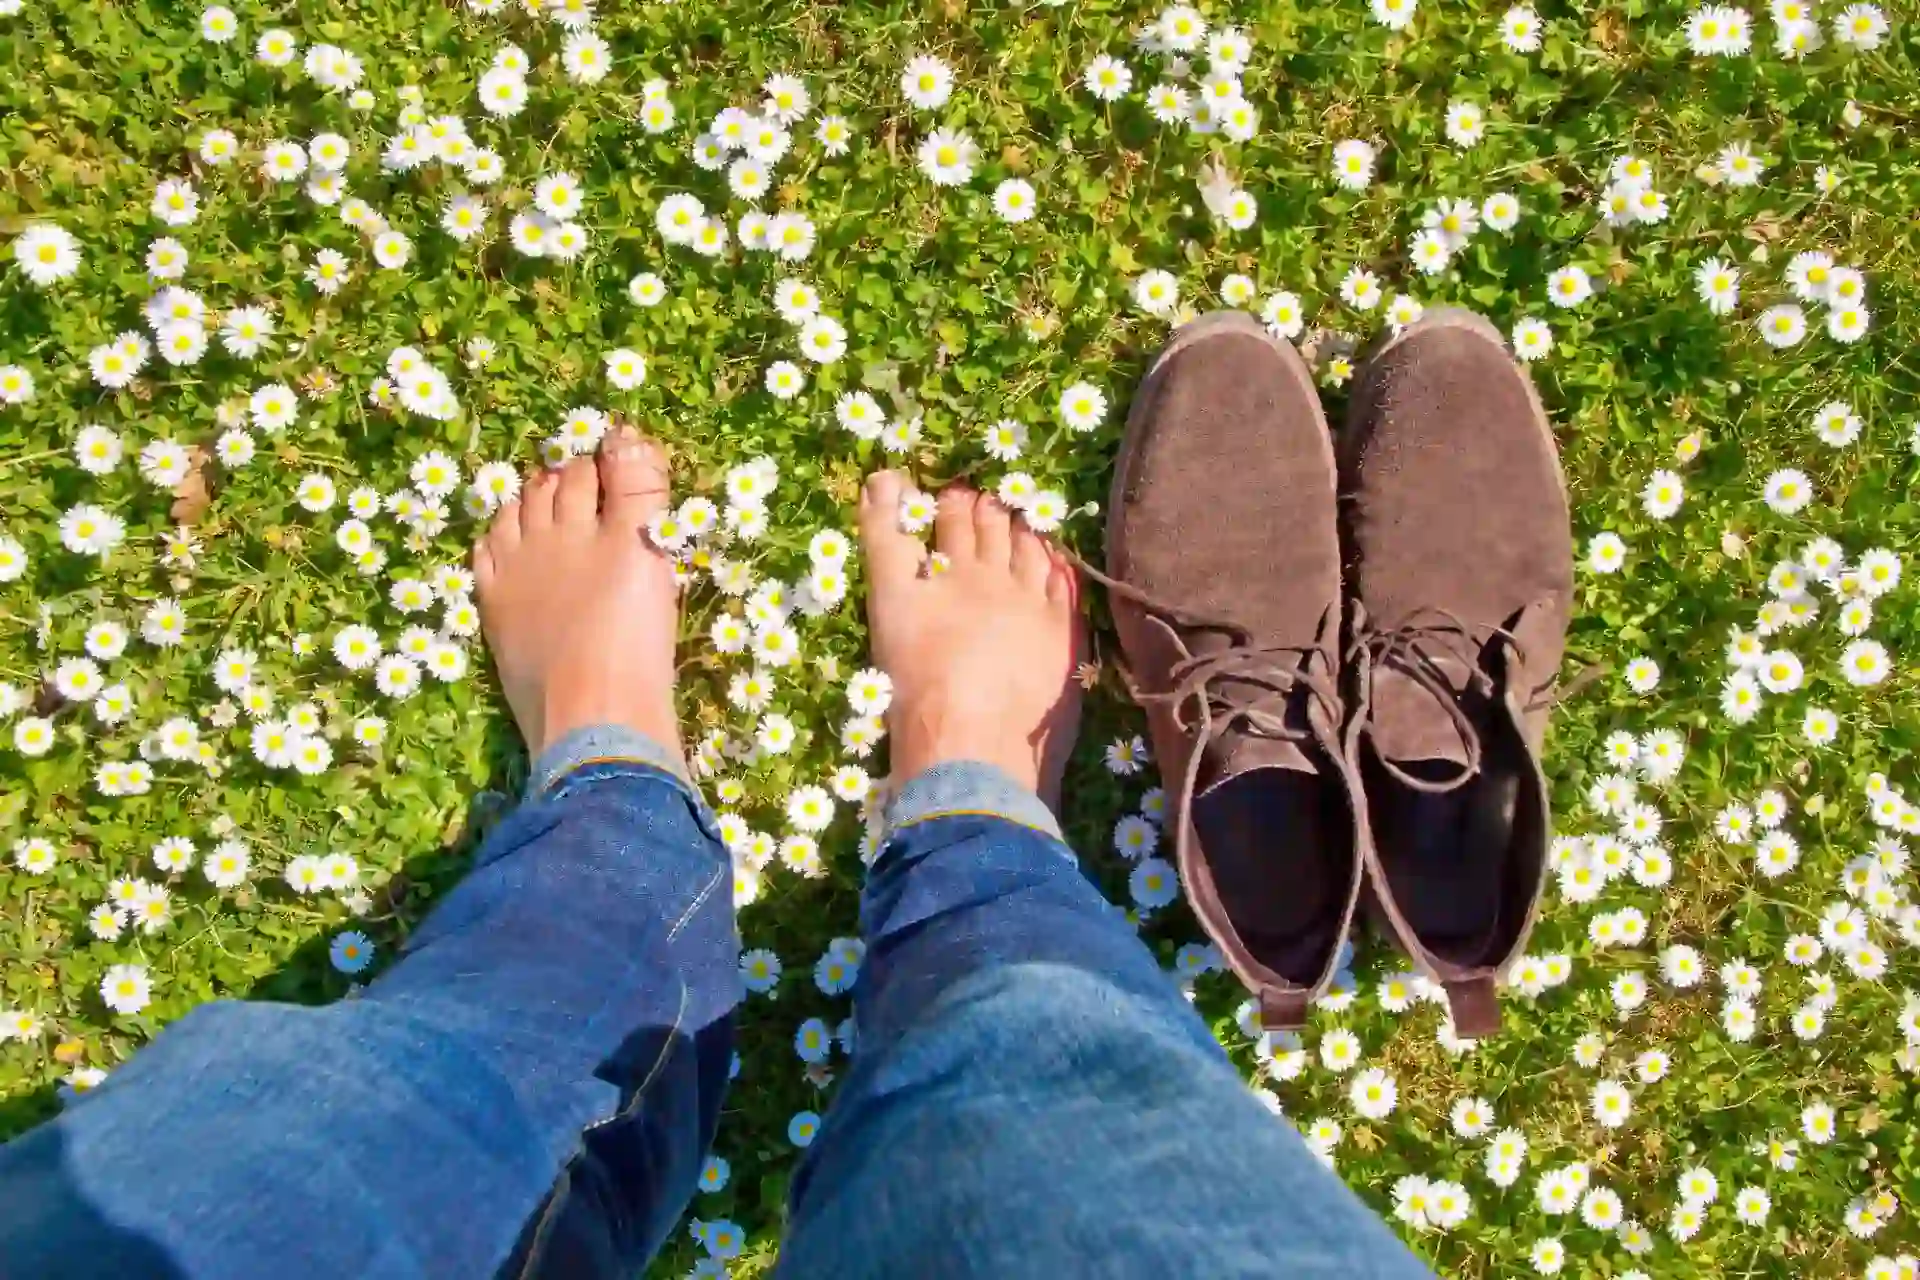 Sommer Schuh u Orthopädie GmbH - Person steht barfuß neben einem Paar Schuhen auf einer Blumenwiese